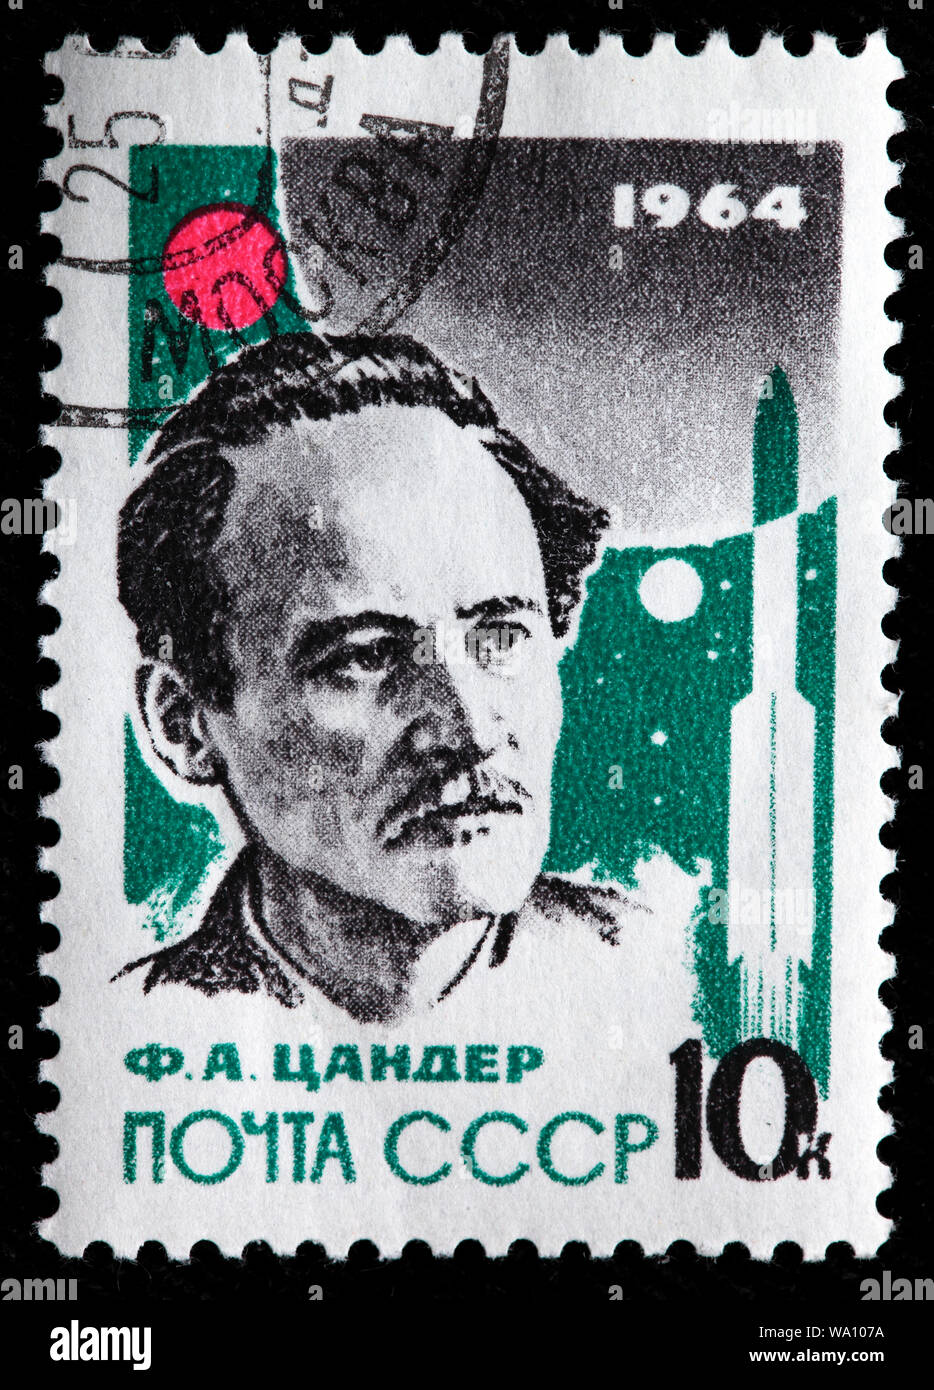 Friedrich Zander (1887-1933), Soviet rocket engineer, postage stamp, Russia, USSR, 1964 Stock Photo